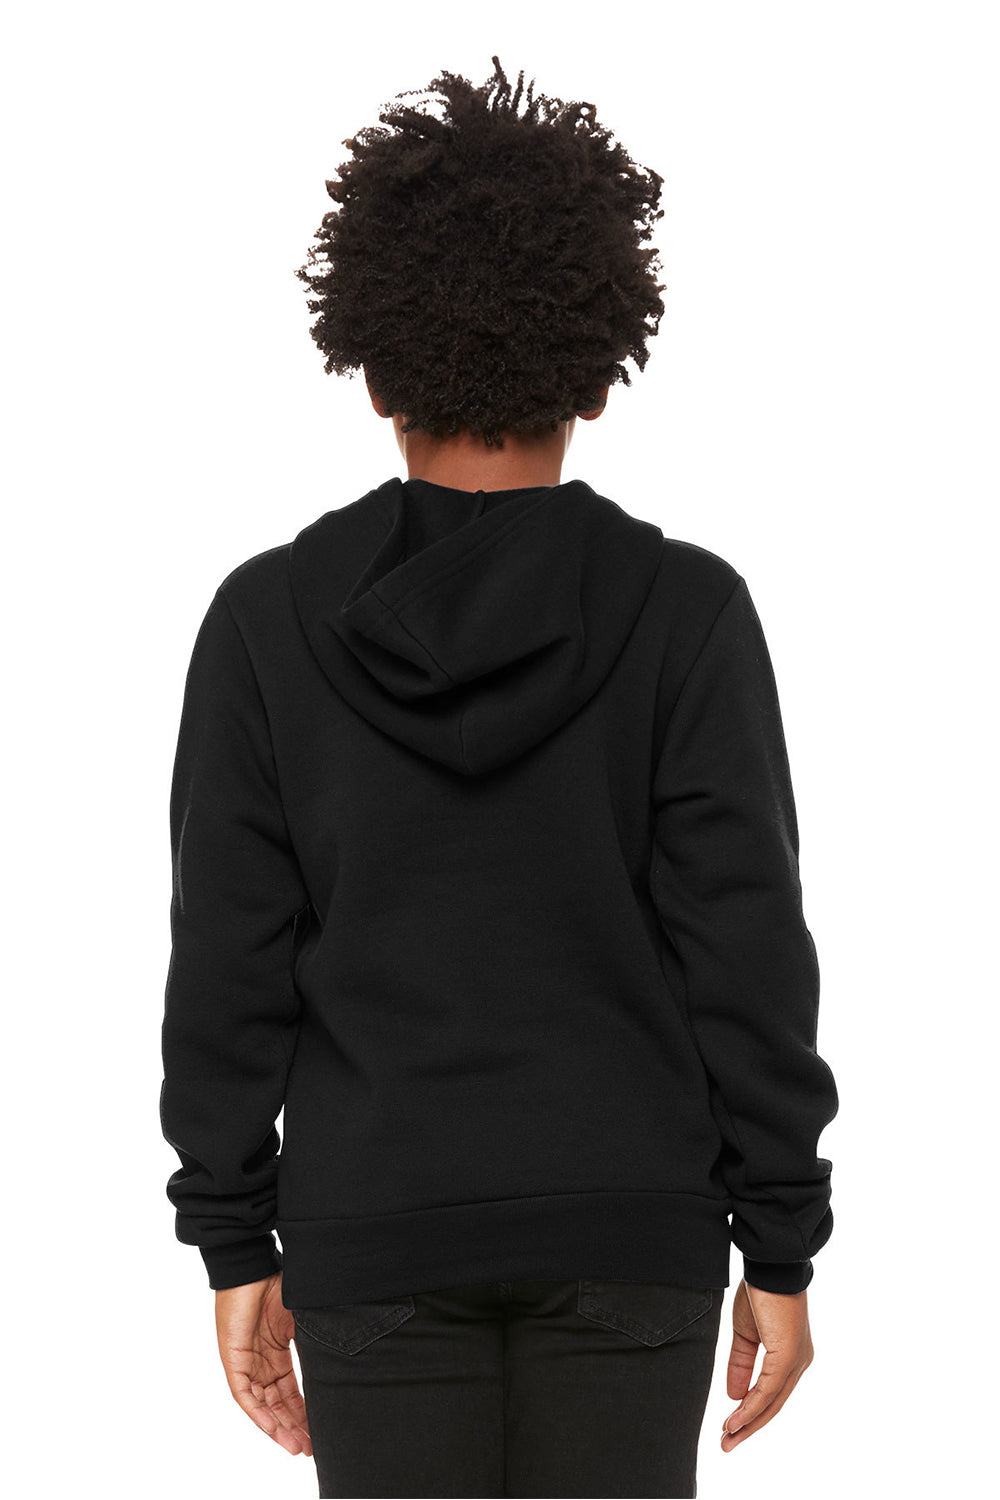 Bella + Canvas 3719Y/BC3719Y Youth Sponge Fleece Hooded Sweatshirt Hoodie Black Model Back